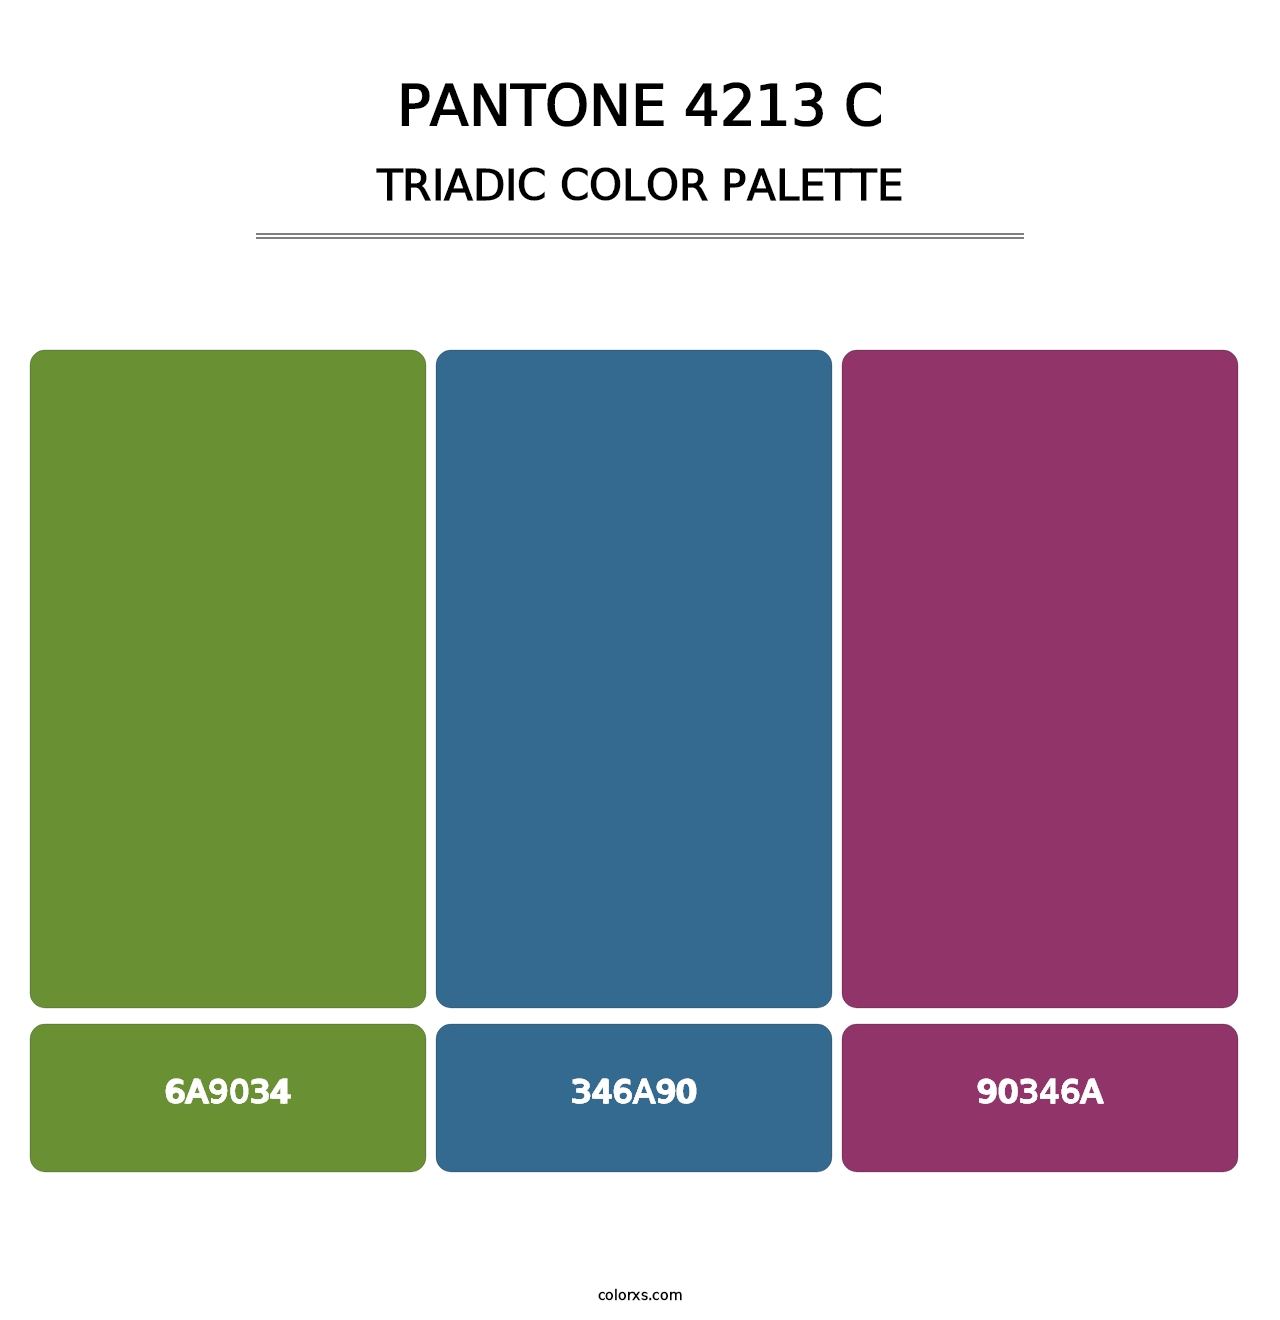 PANTONE 4213 C - Triadic Color Palette